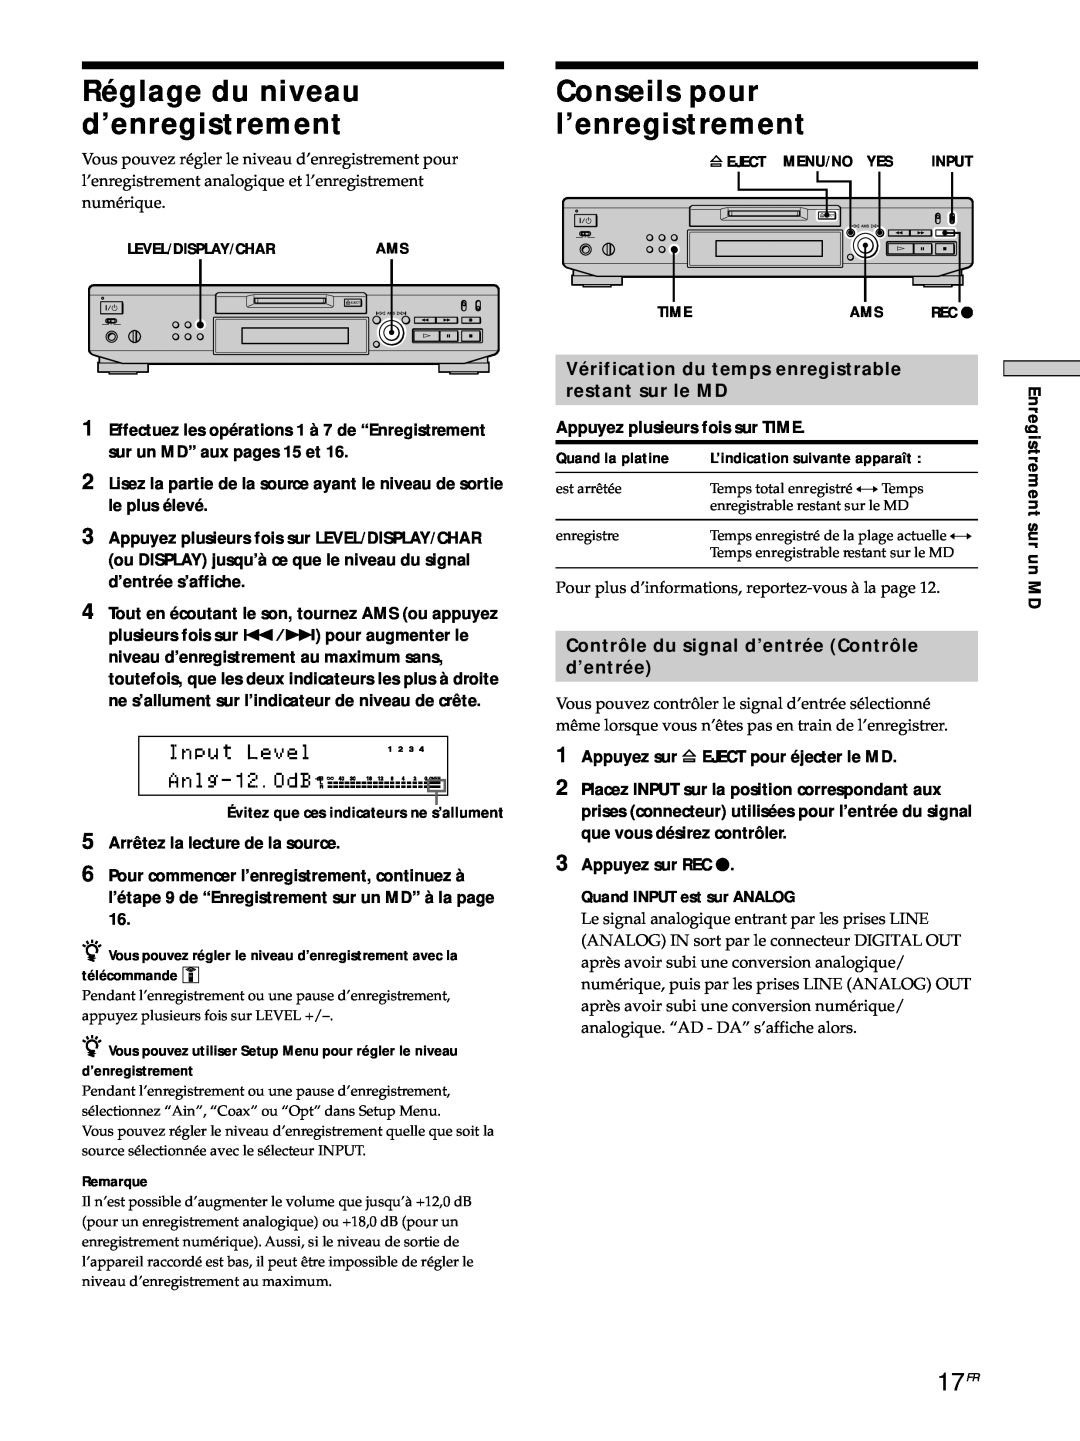 Sony MDS-JE530 manual Réglage du niveau d’enregistrement, Conseils pour l’enregistrement, 17FR, restant sur le MD 